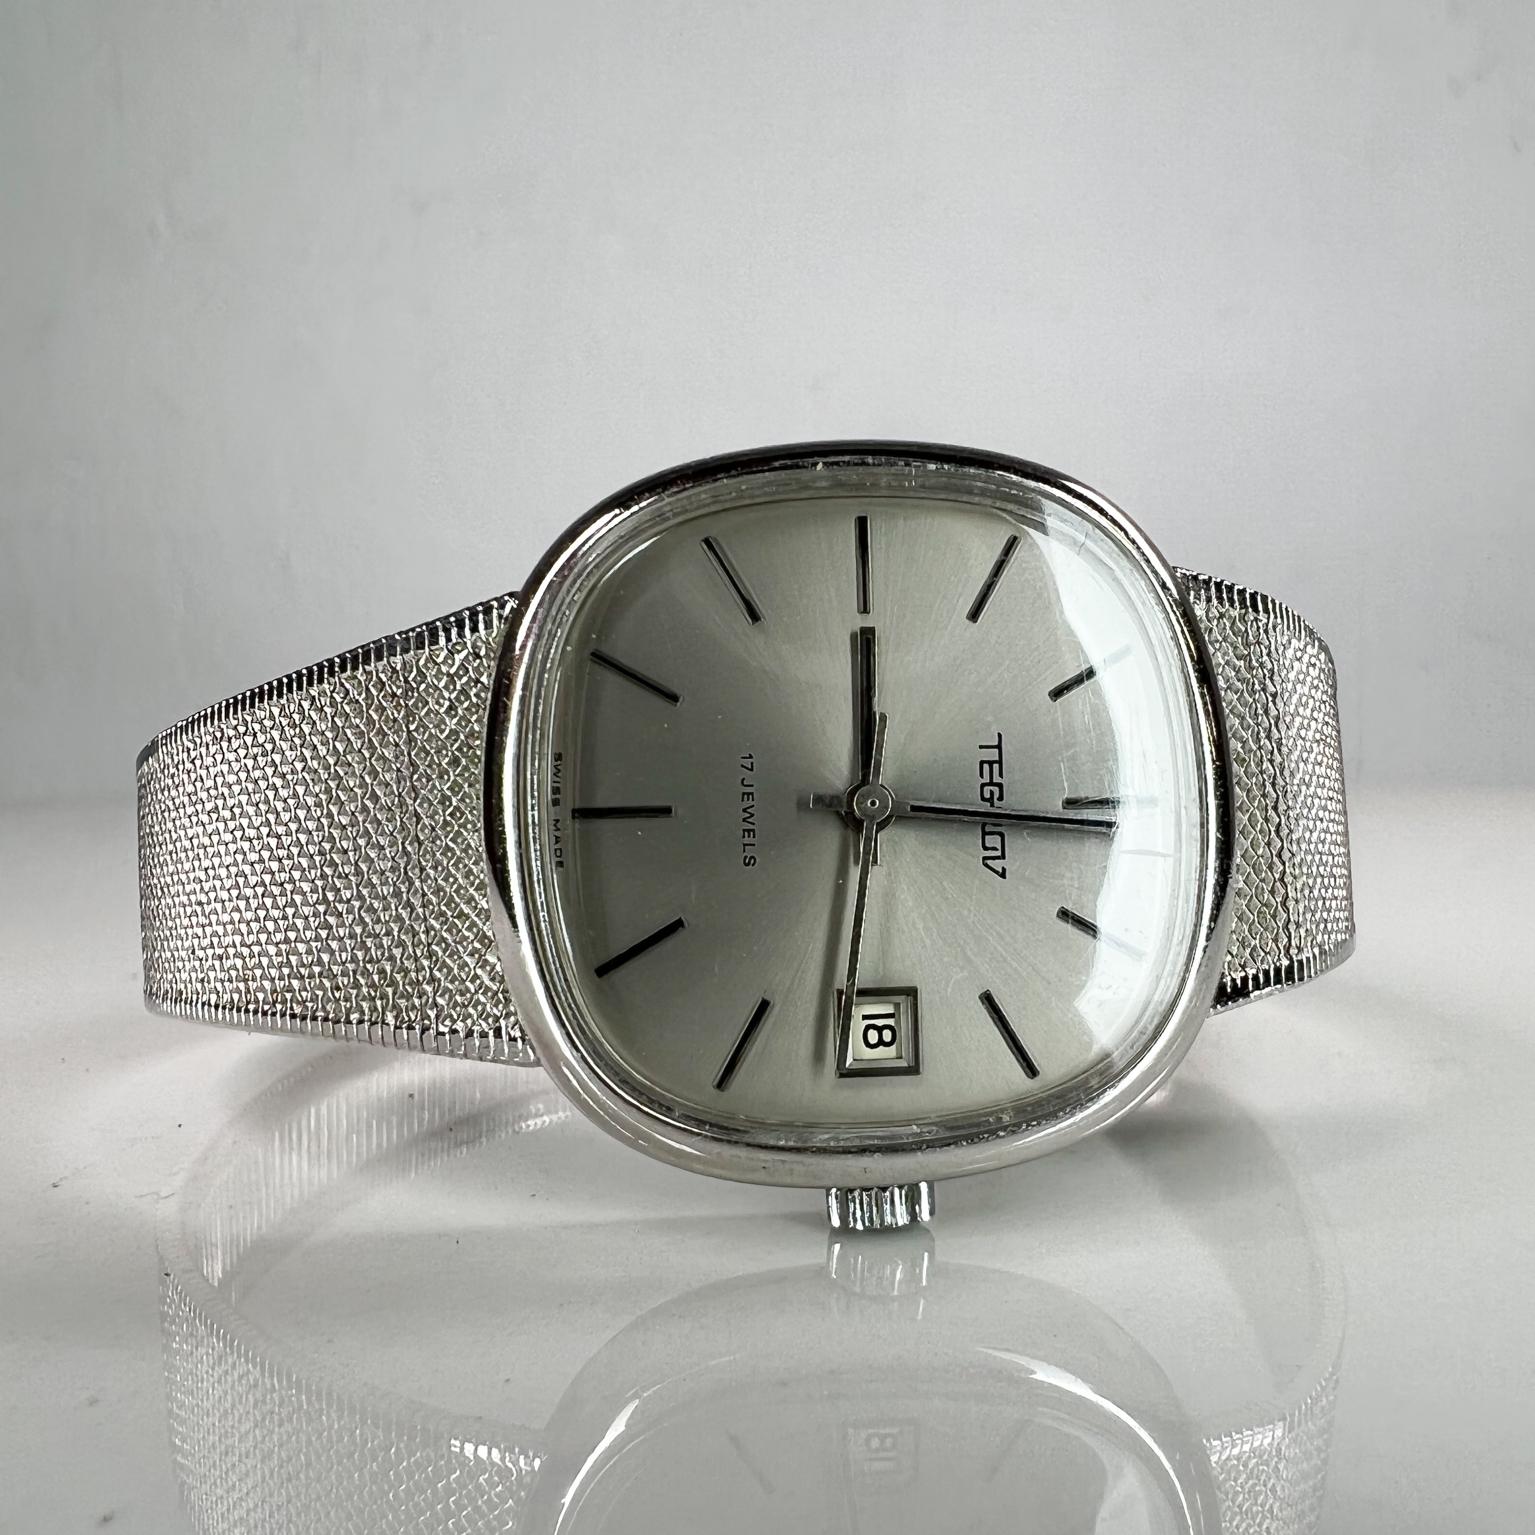 Vintage Tegrov Schweizer gemacht Vintage mechanische Uhr
17 Juwelen 
Rostfreier Stahl
Maße: 9 lang x 1,38 breit x 0,38 dick
Gebrauchter originaler unrestaurierter Vintage-Zustand
Siehe mitgelieferte Bilder.


